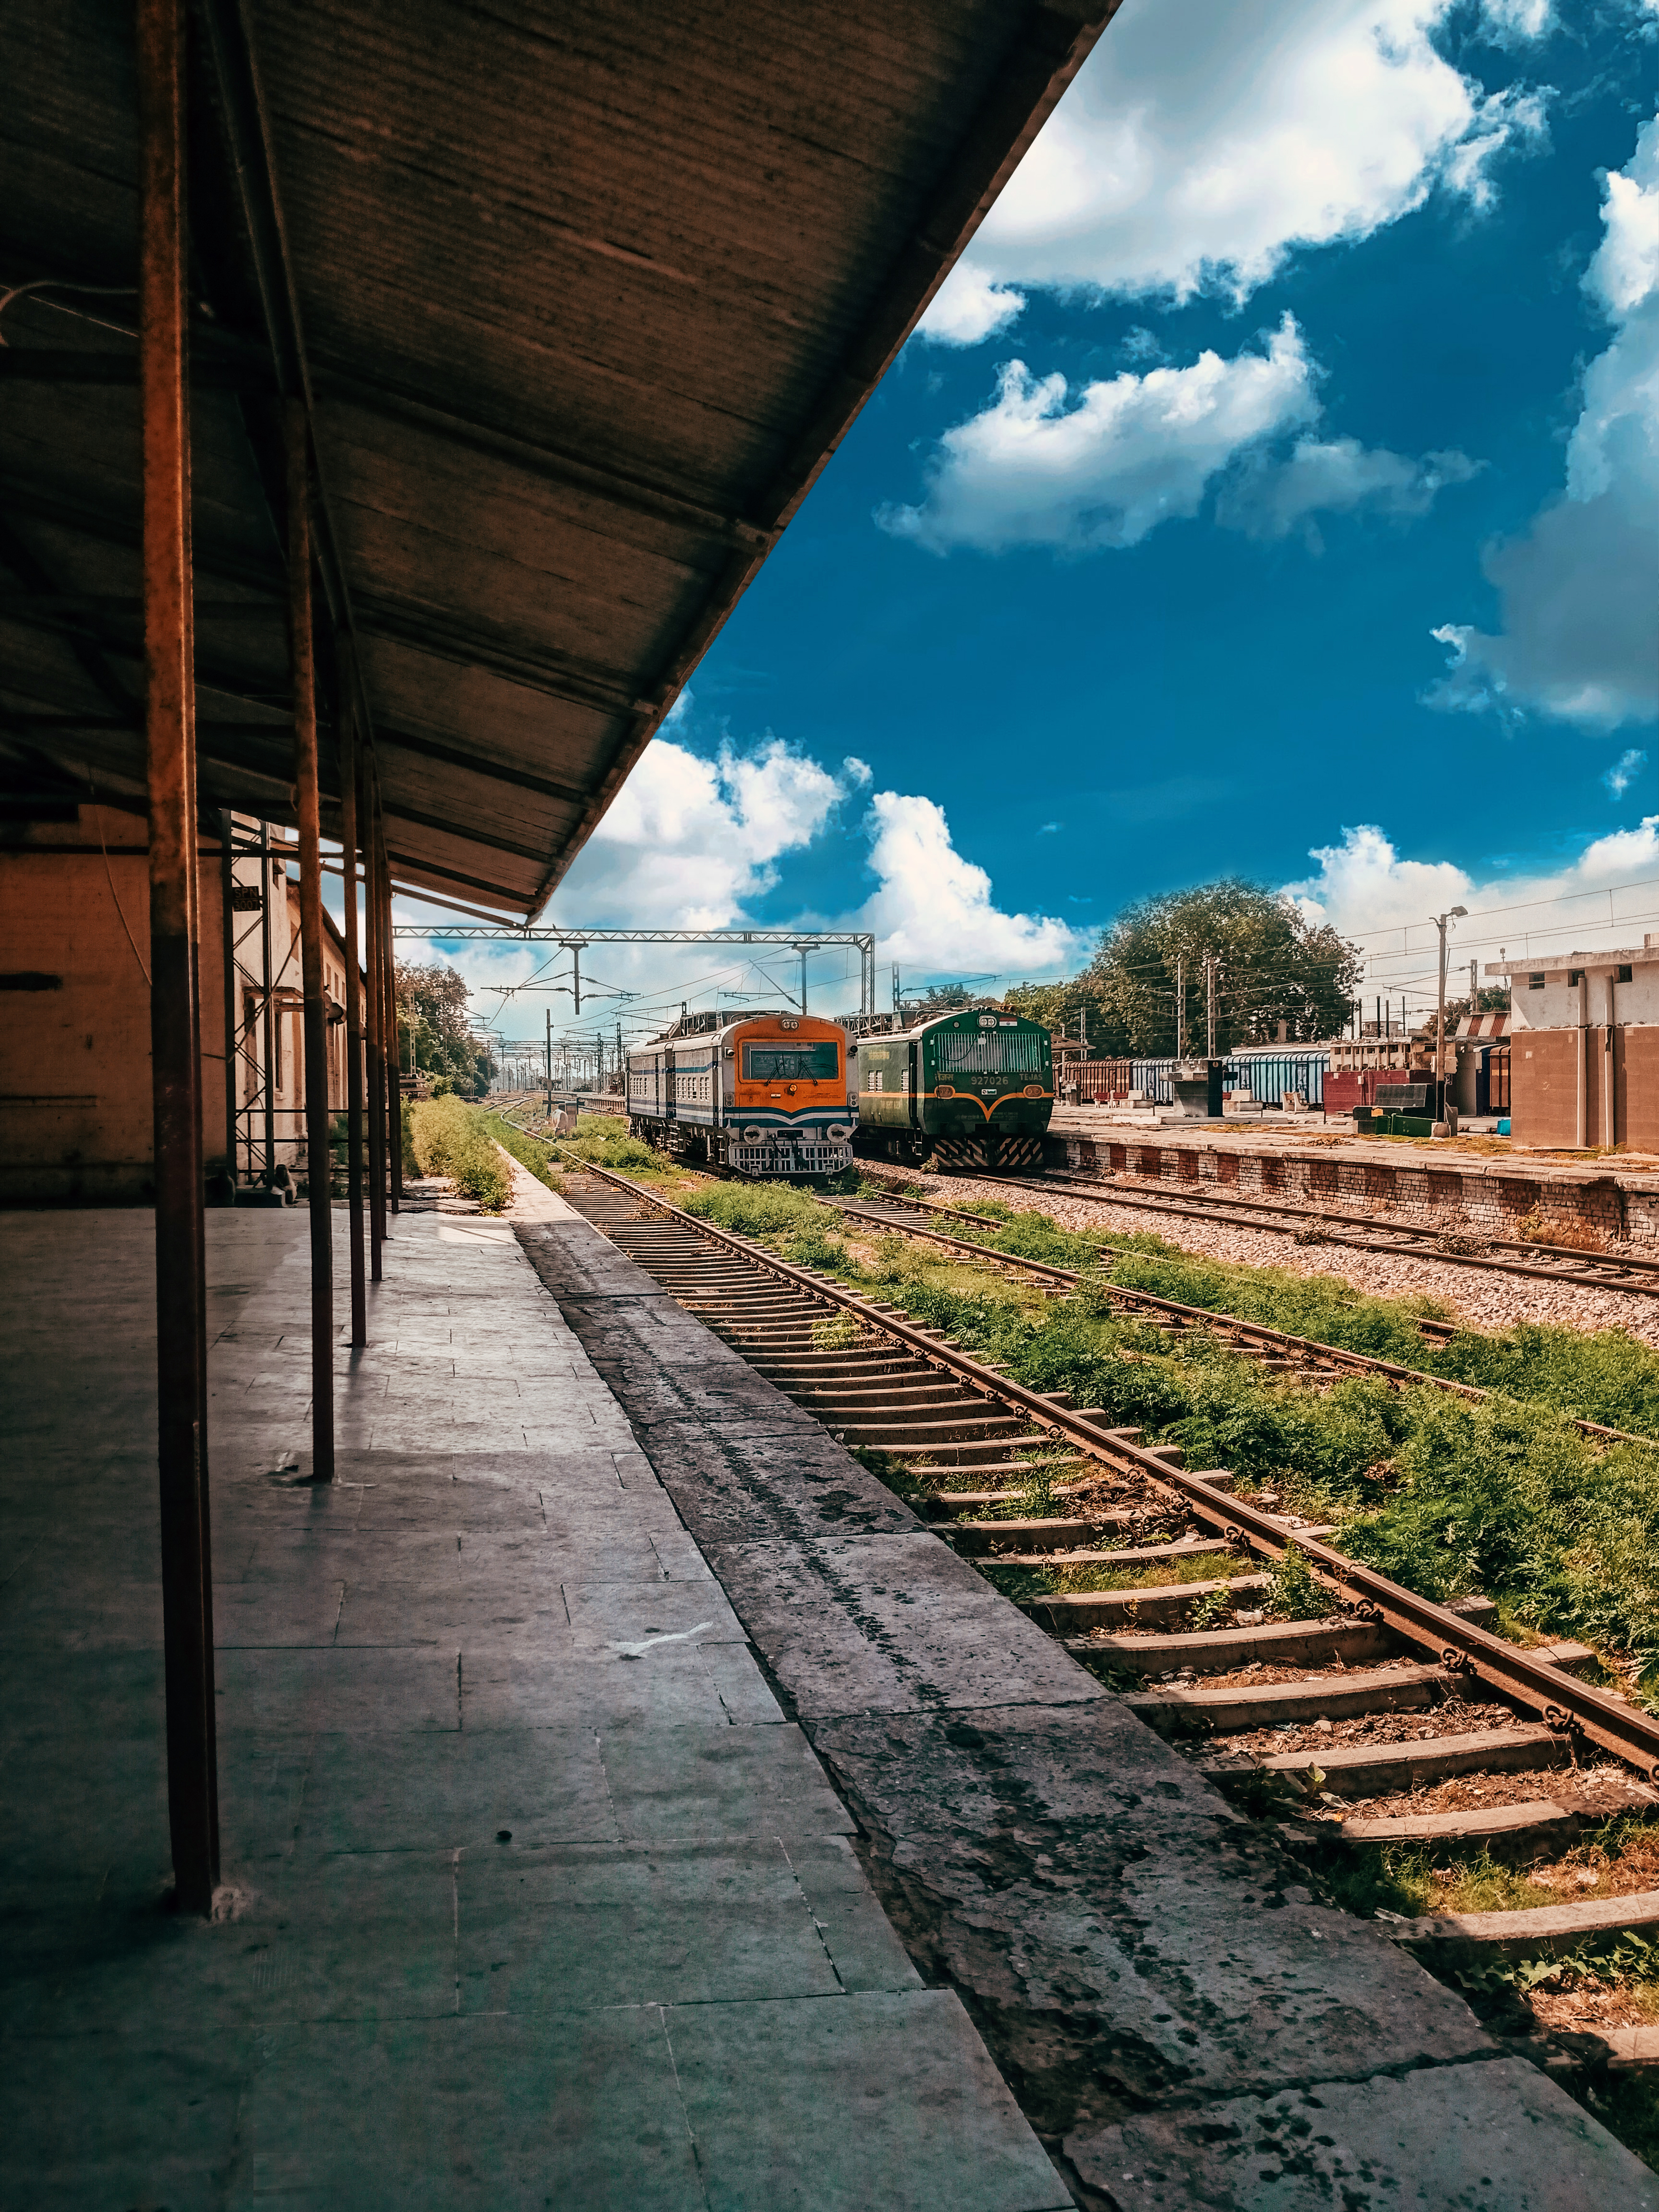 Train Platform Station locomotives Clouds 4K Image